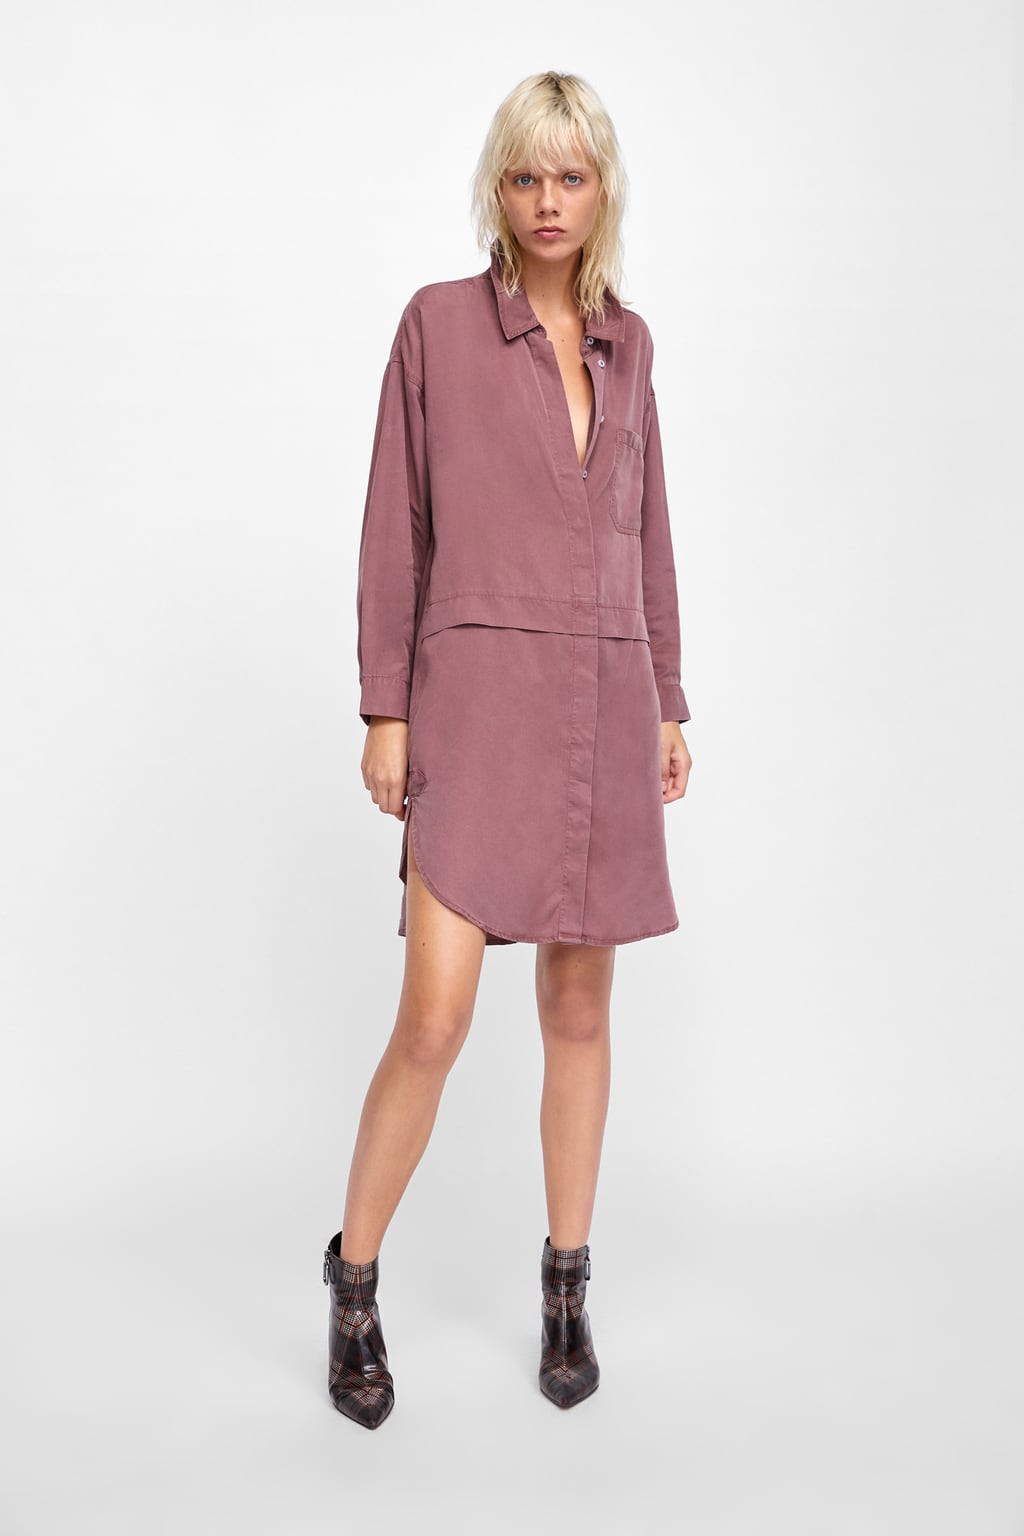 Vestido camiseiro oversize, Zara, 29,95 euros.jpg